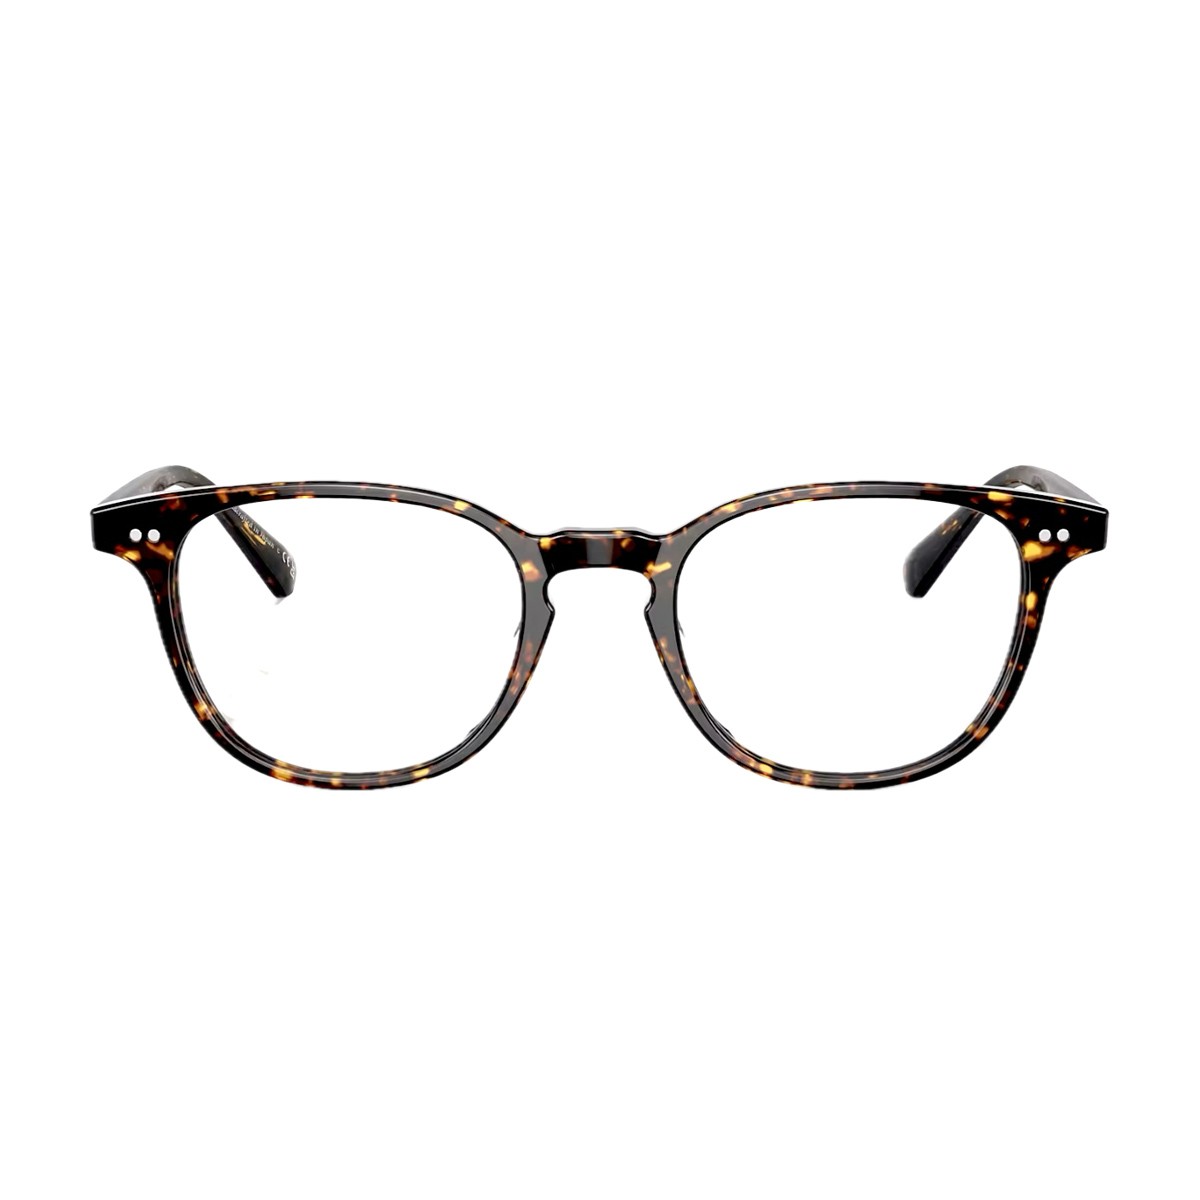 Uno stile senza tempo con gli occhiali da vista vintage per uomo